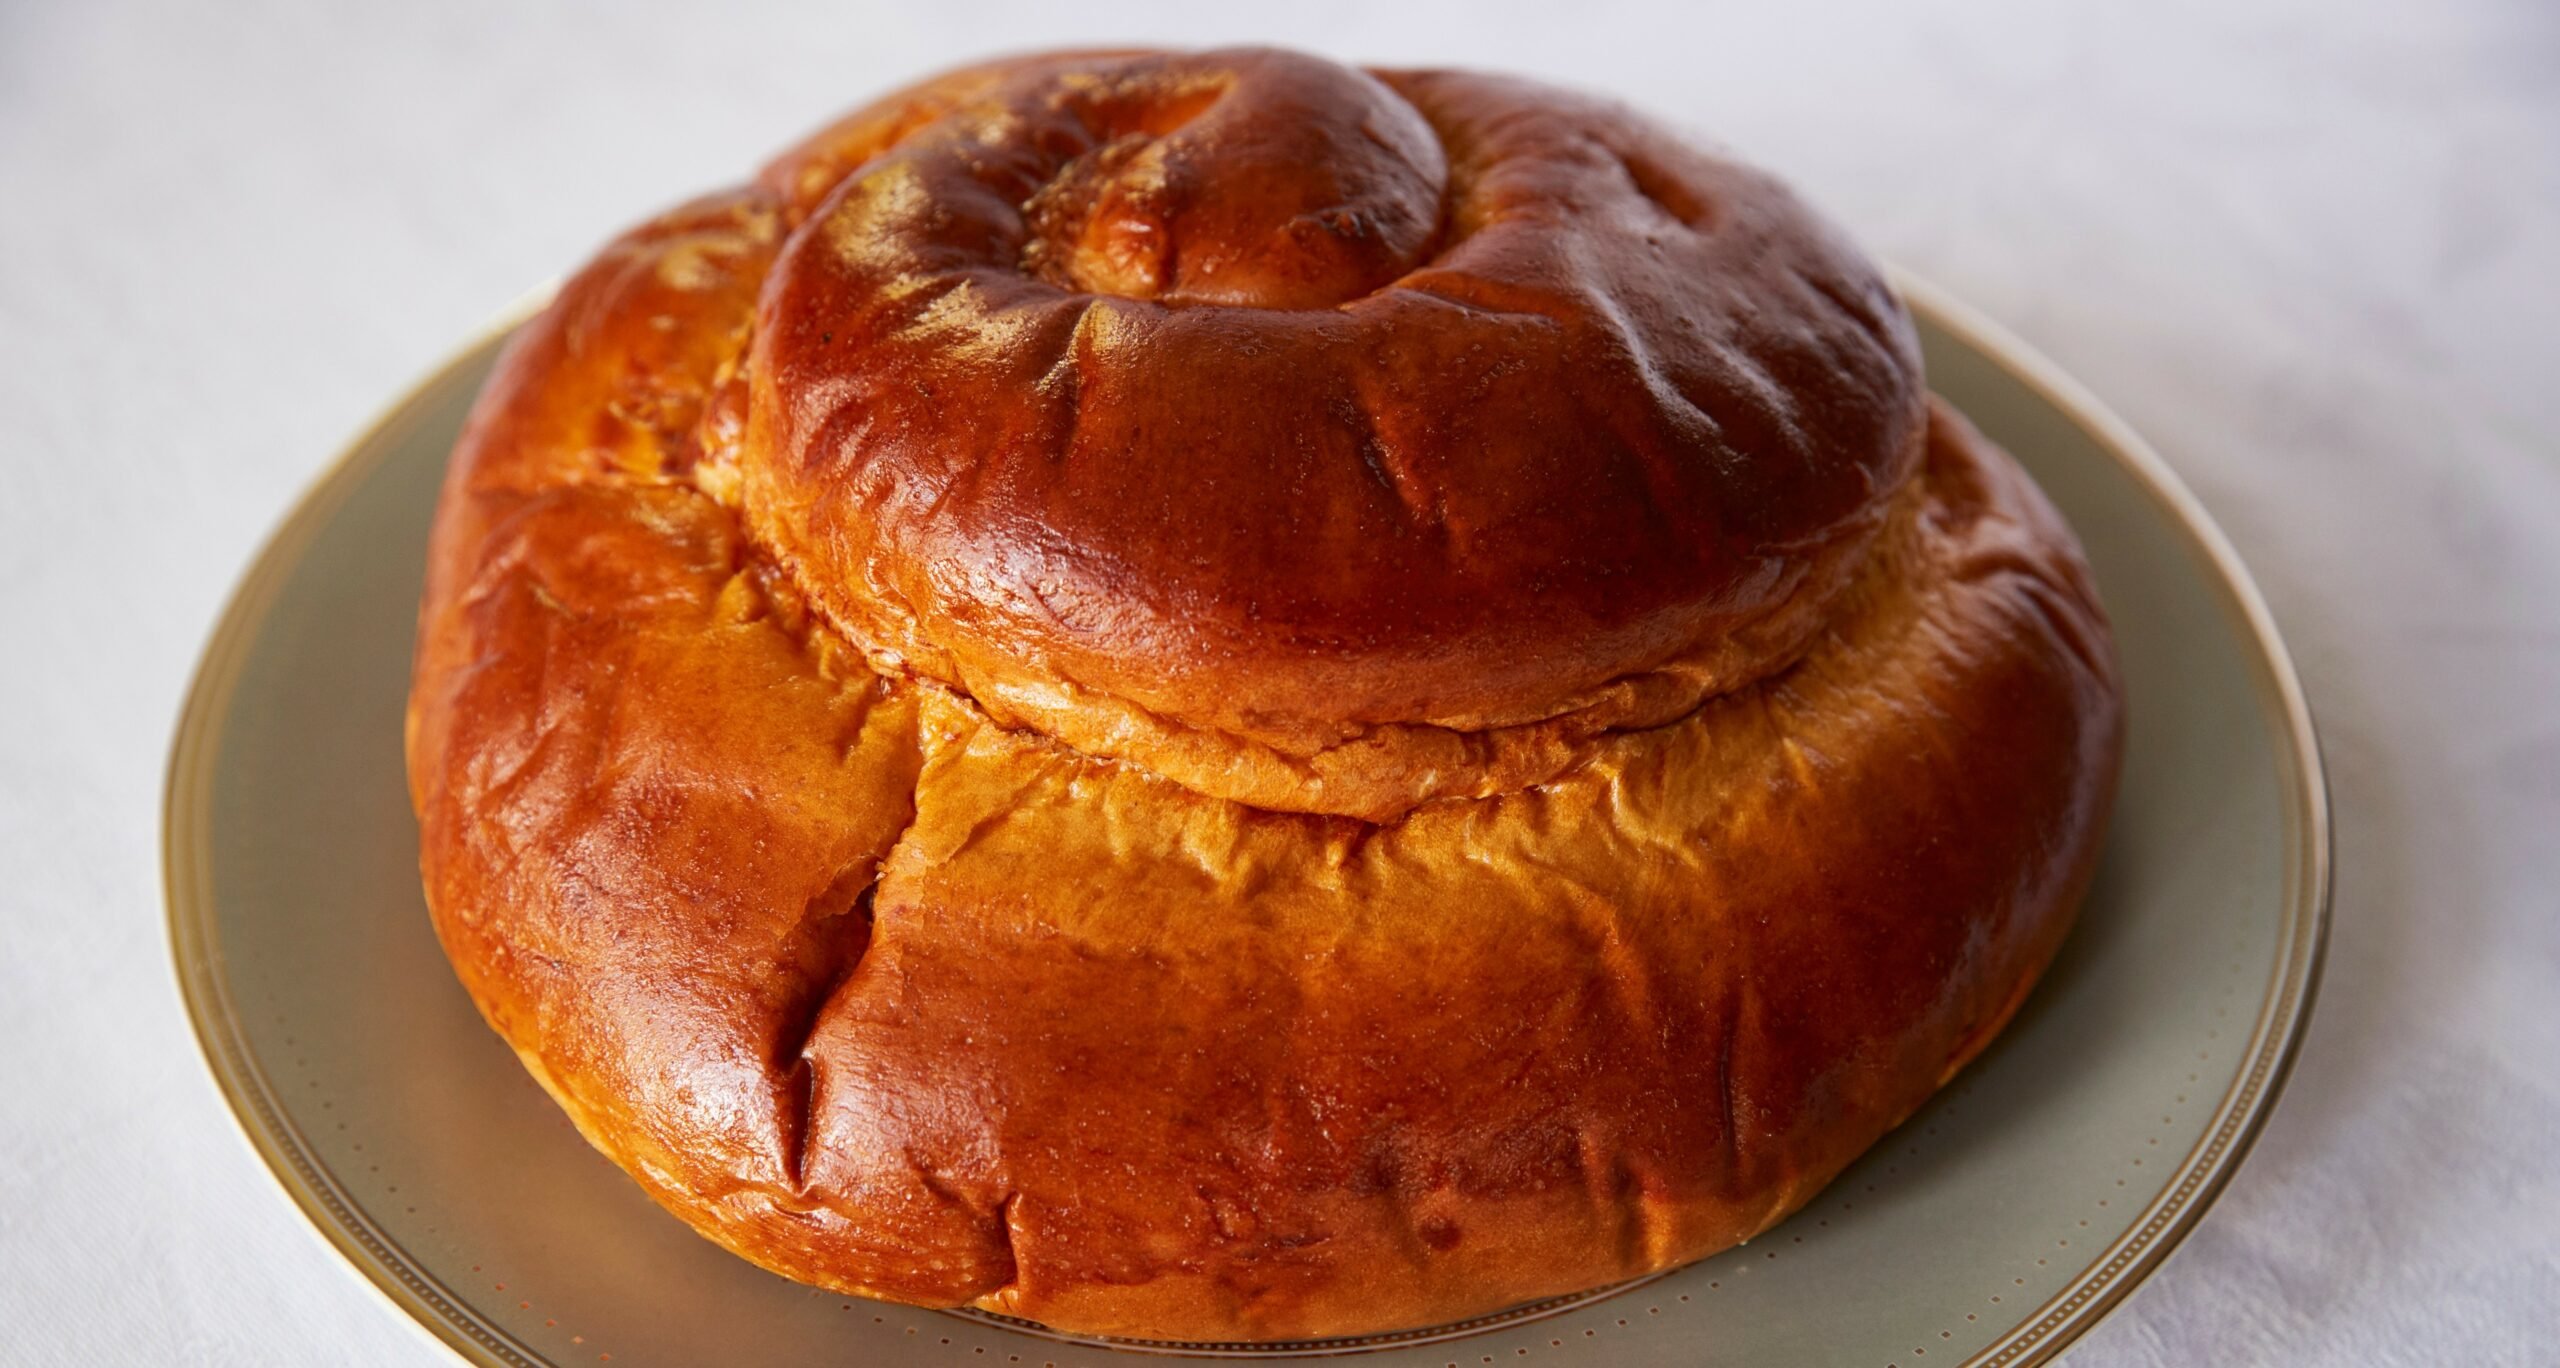 Round challah bread for rosh hashanah, Jewish New Year